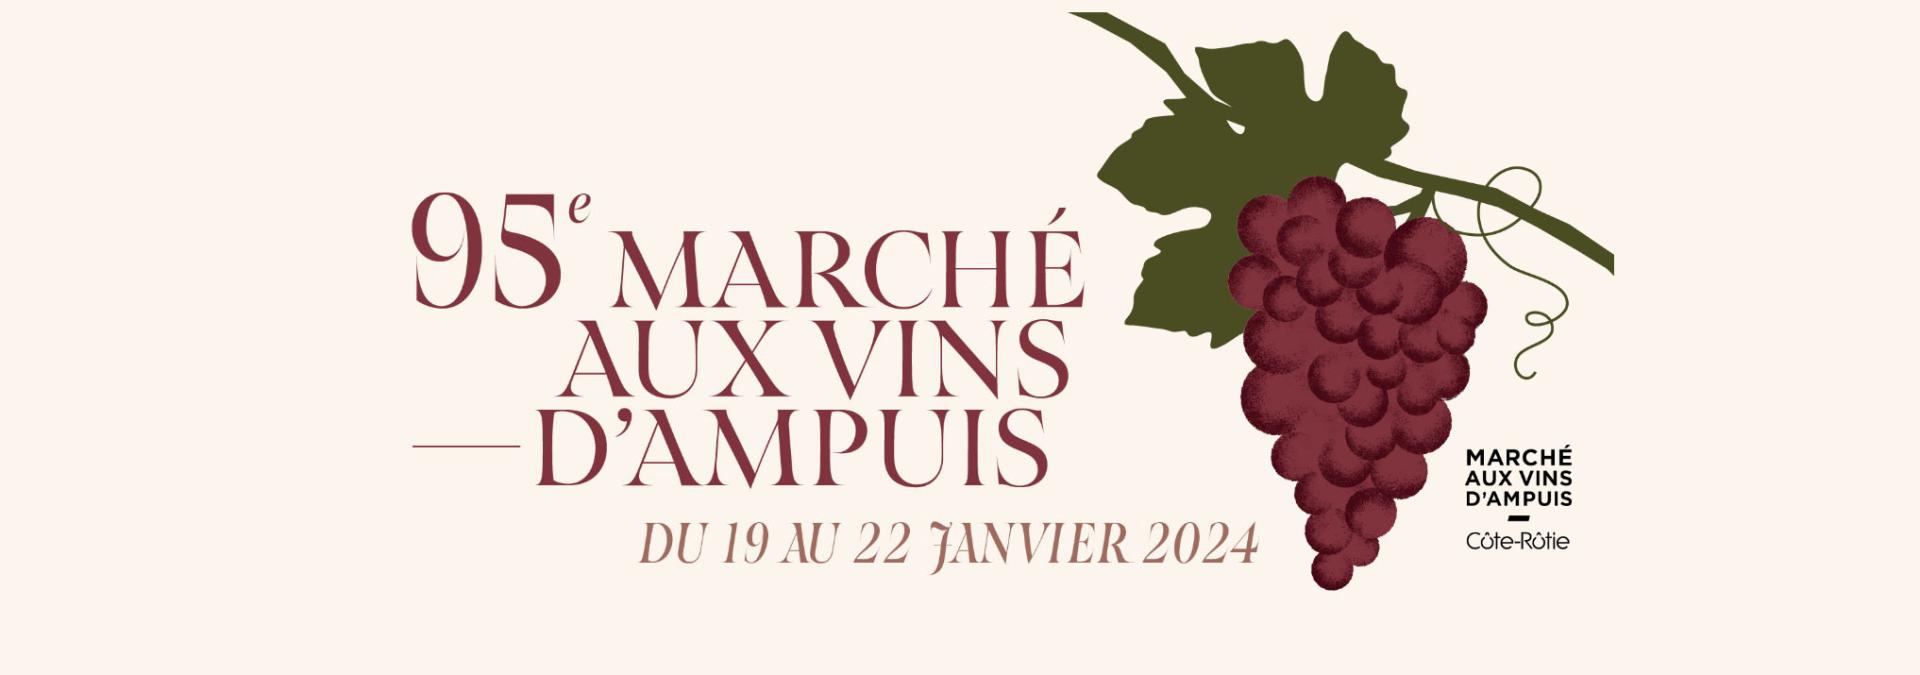 Affiche marché aux vins d'Ampuis 2024